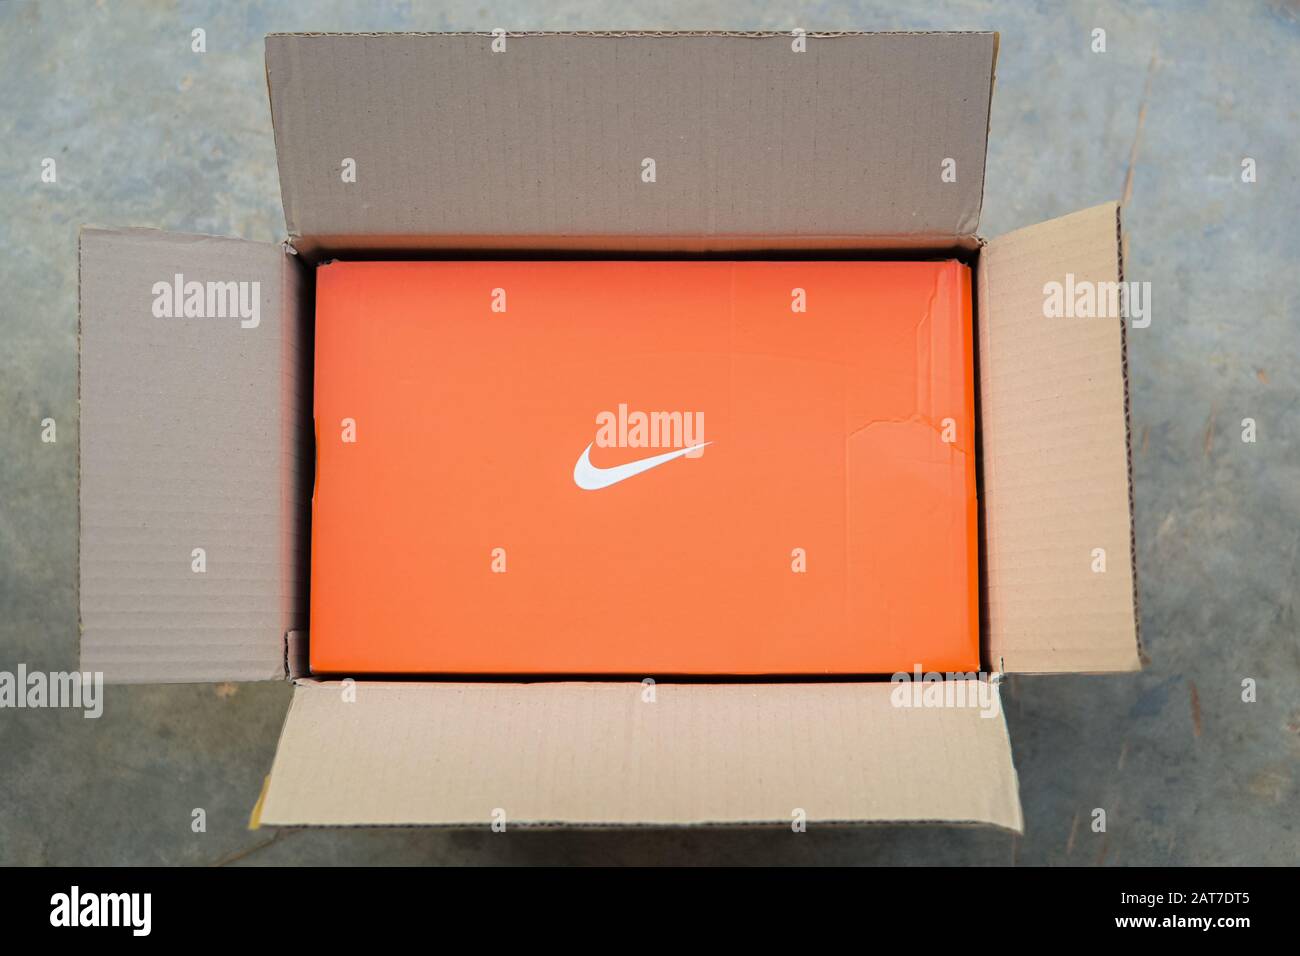 Khon Kaen, THAÏLANDE - Janvier 2020 : Nike Shoes Box dans une boîte postale commande en ligne et livraison express à la maison Banque D'Images